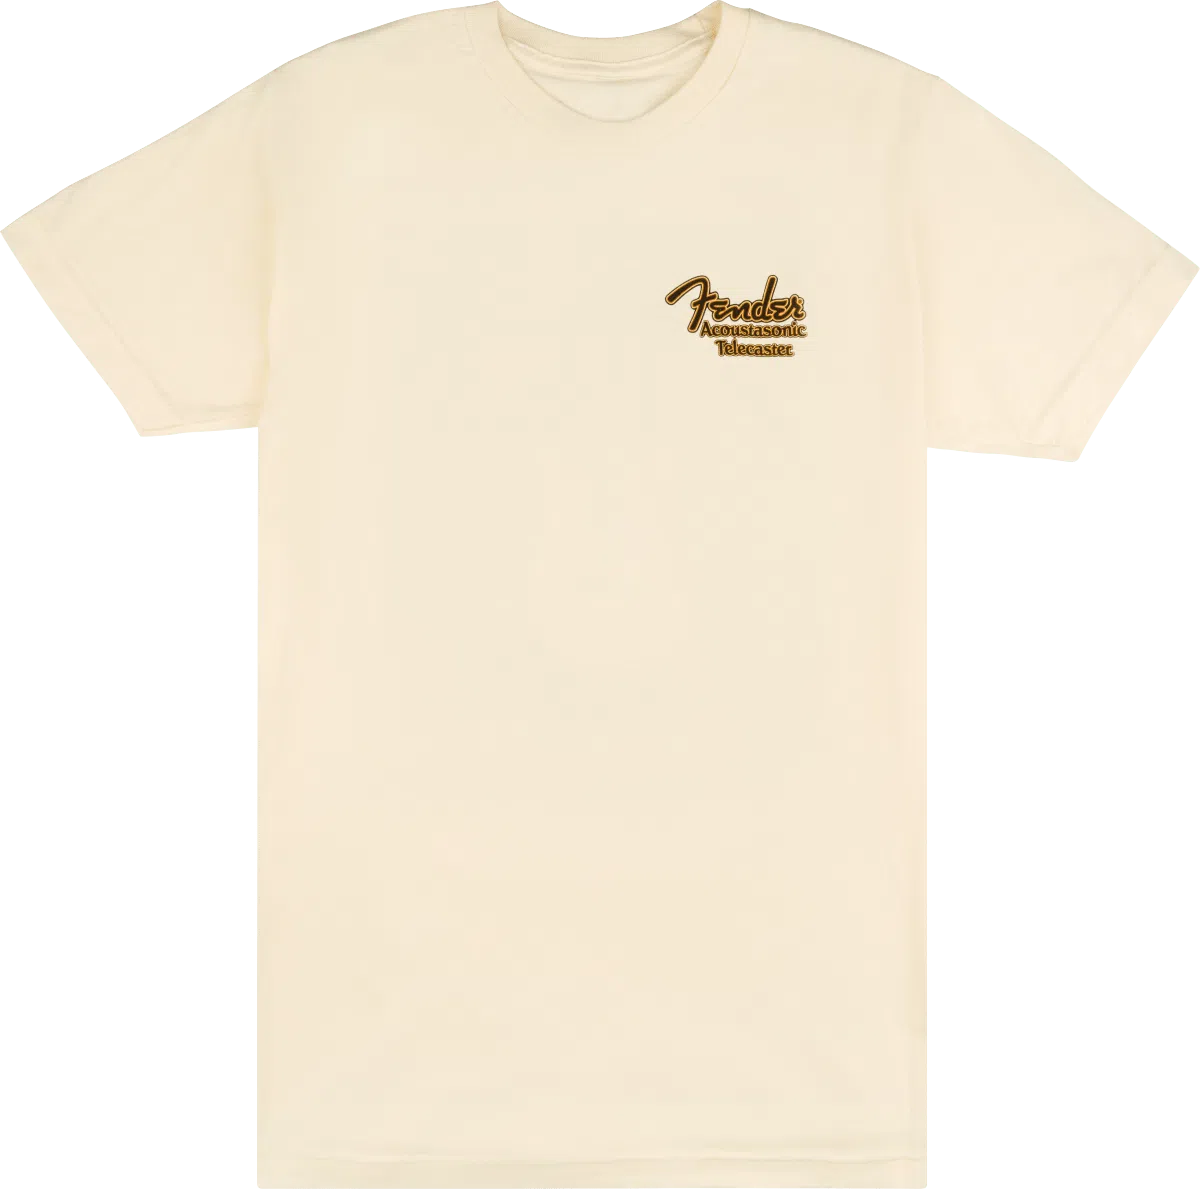 Fender Acoustasonic Telecaster T-shirt Cream, XL